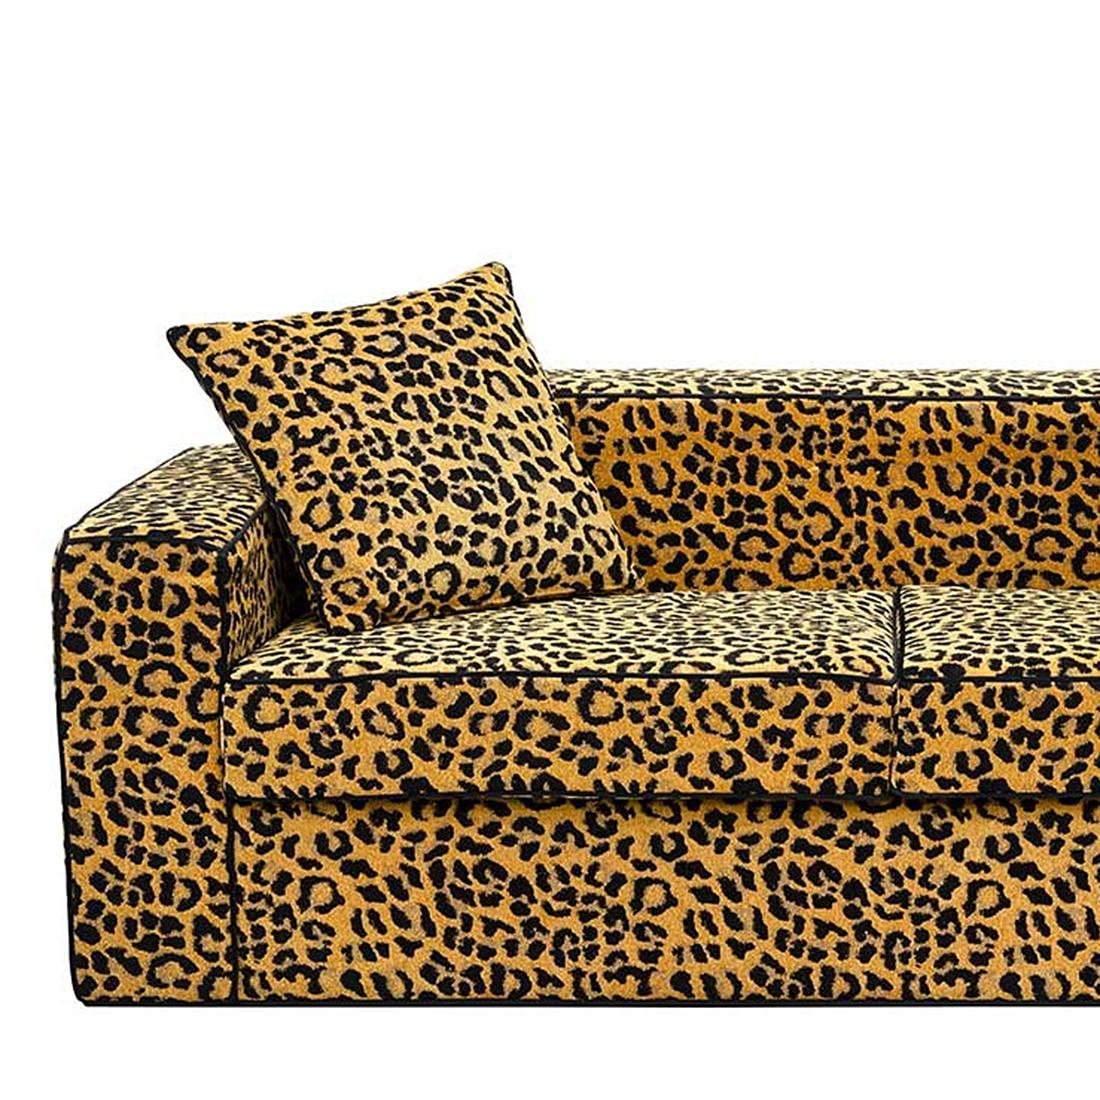 Canapé léopard 2 places en bois
structure. Tapissé et recouvert
avec un tissu léopard en velours lisse. Avec
2 coussins inclus.
Également disponible en tissu velours noir.
Avec 2 coussins inclus.